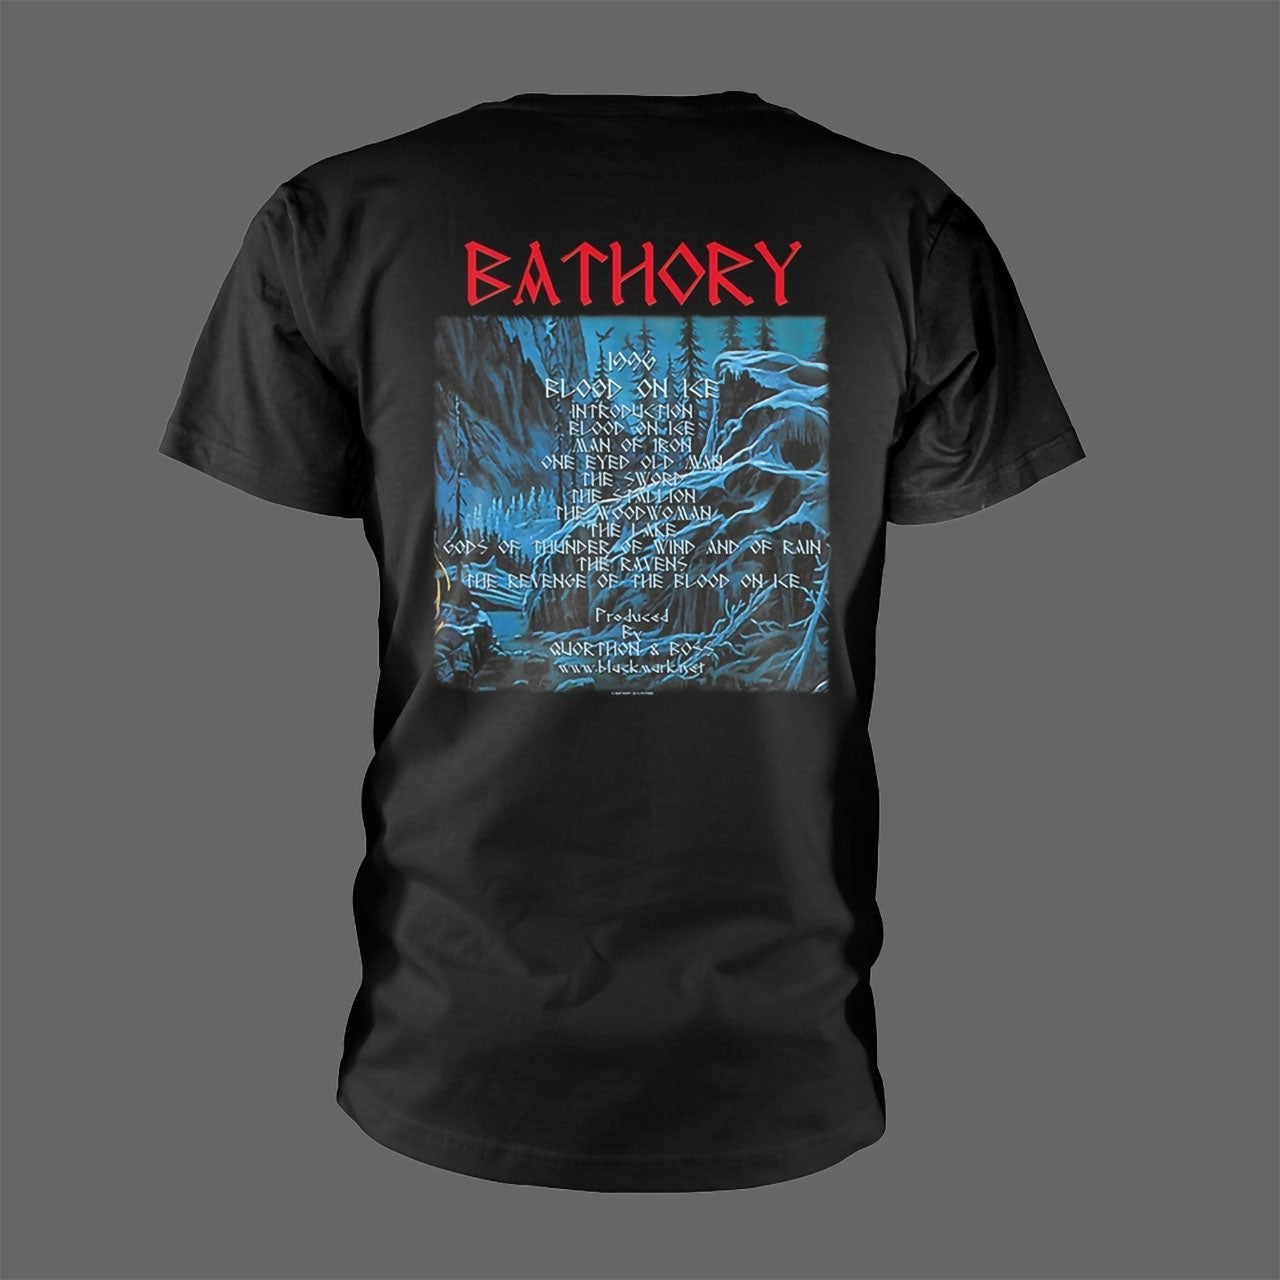 Bathory - Blood on Ice (T-Shirt)